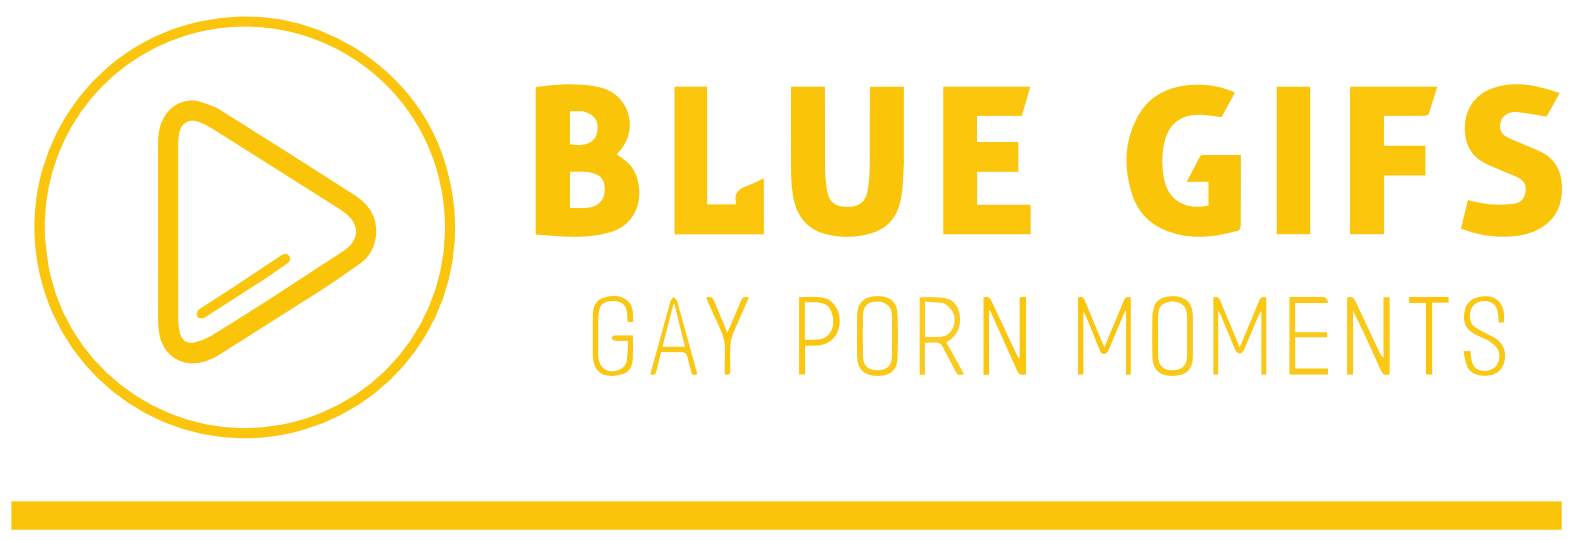 Blue Gifs